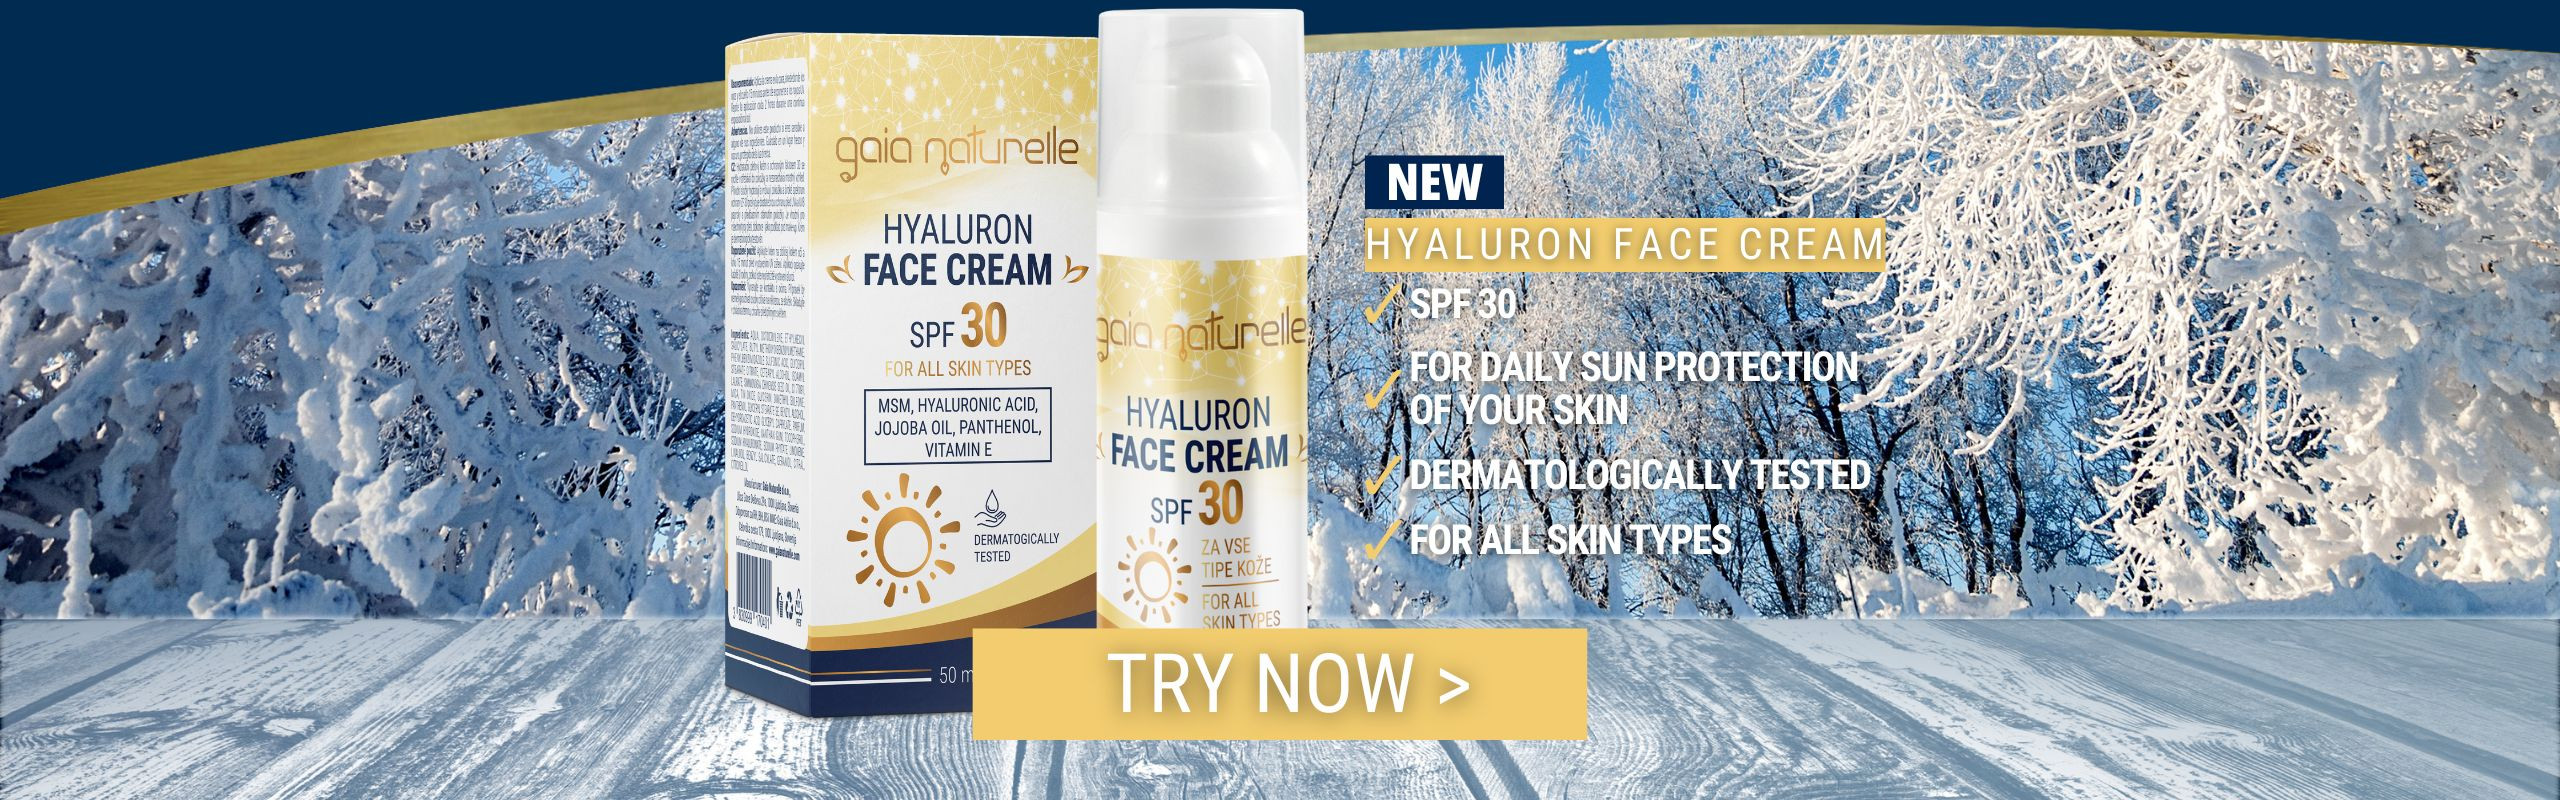 NEW - Hyaluron Face Cream SPF 30